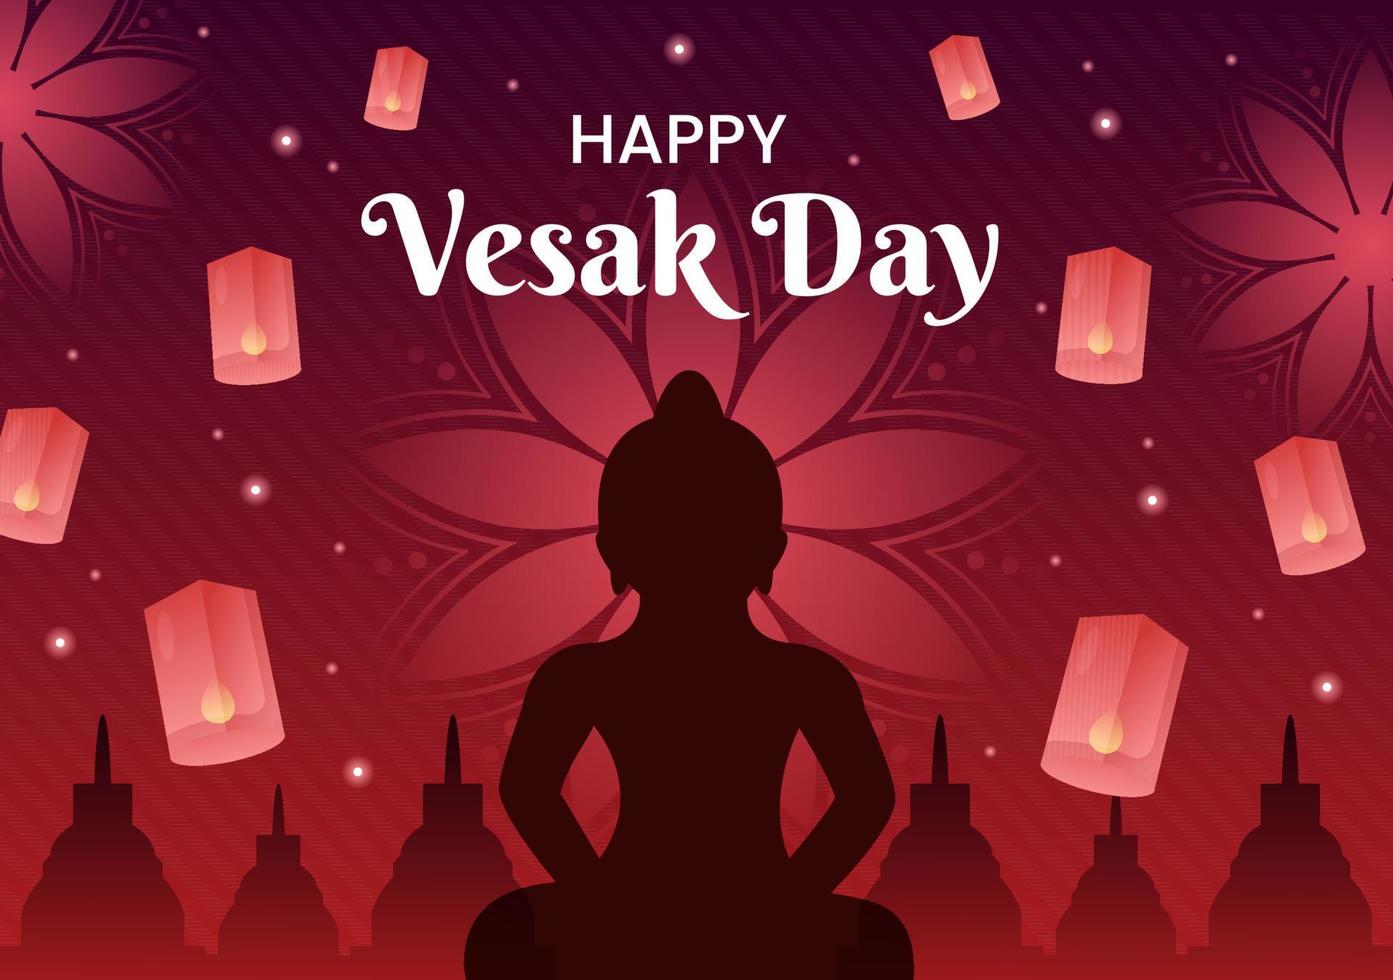 celebração do dia vesak com silhueta do templo, decoração de flores de lótus, lanterna ou pessoa de buda em ilustração de fundo de desenho animado plano para cartão de felicitações vetor